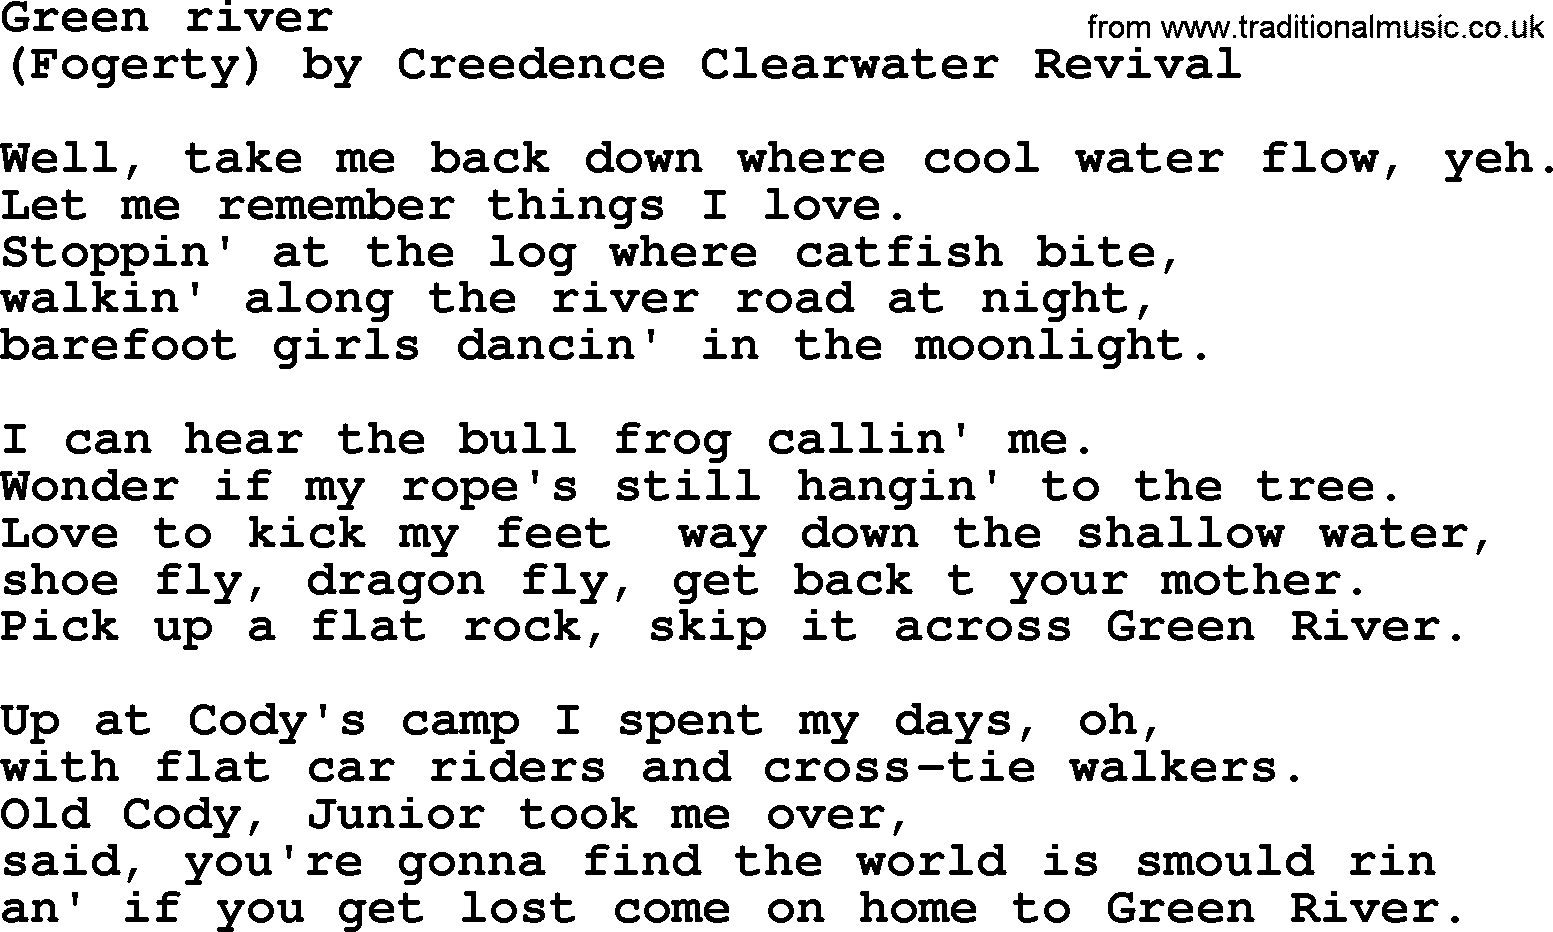 Bruce Springsteen song: Green River lyrics